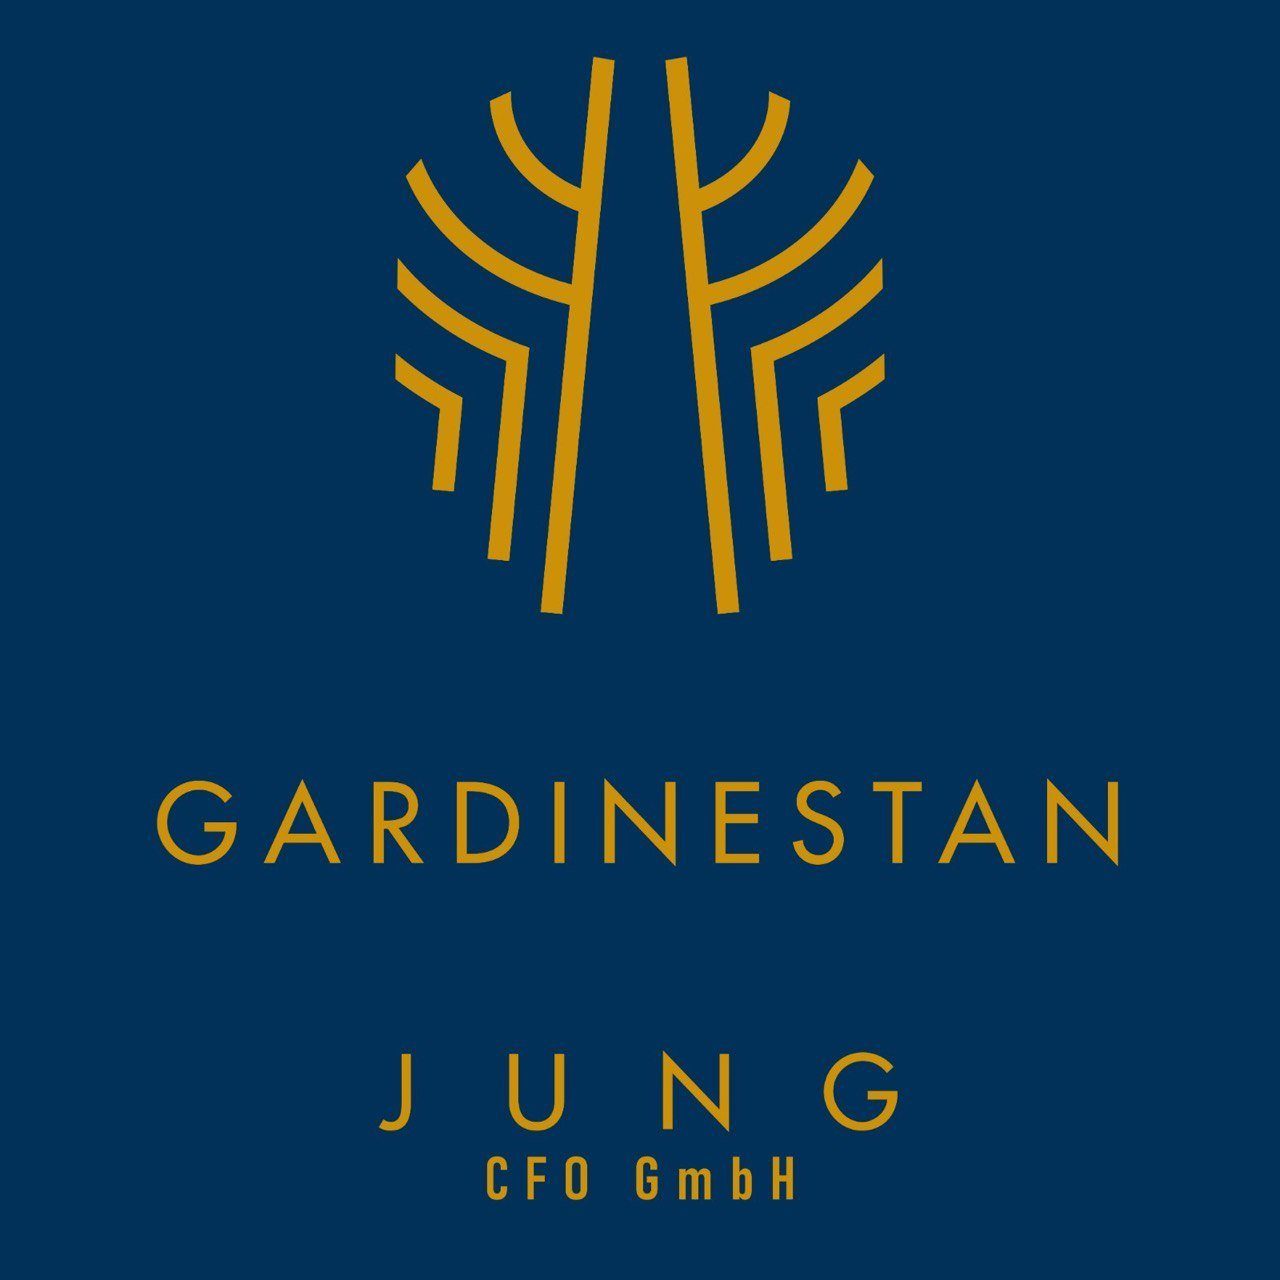 GARDINESTAN JUNG CFO GmbH